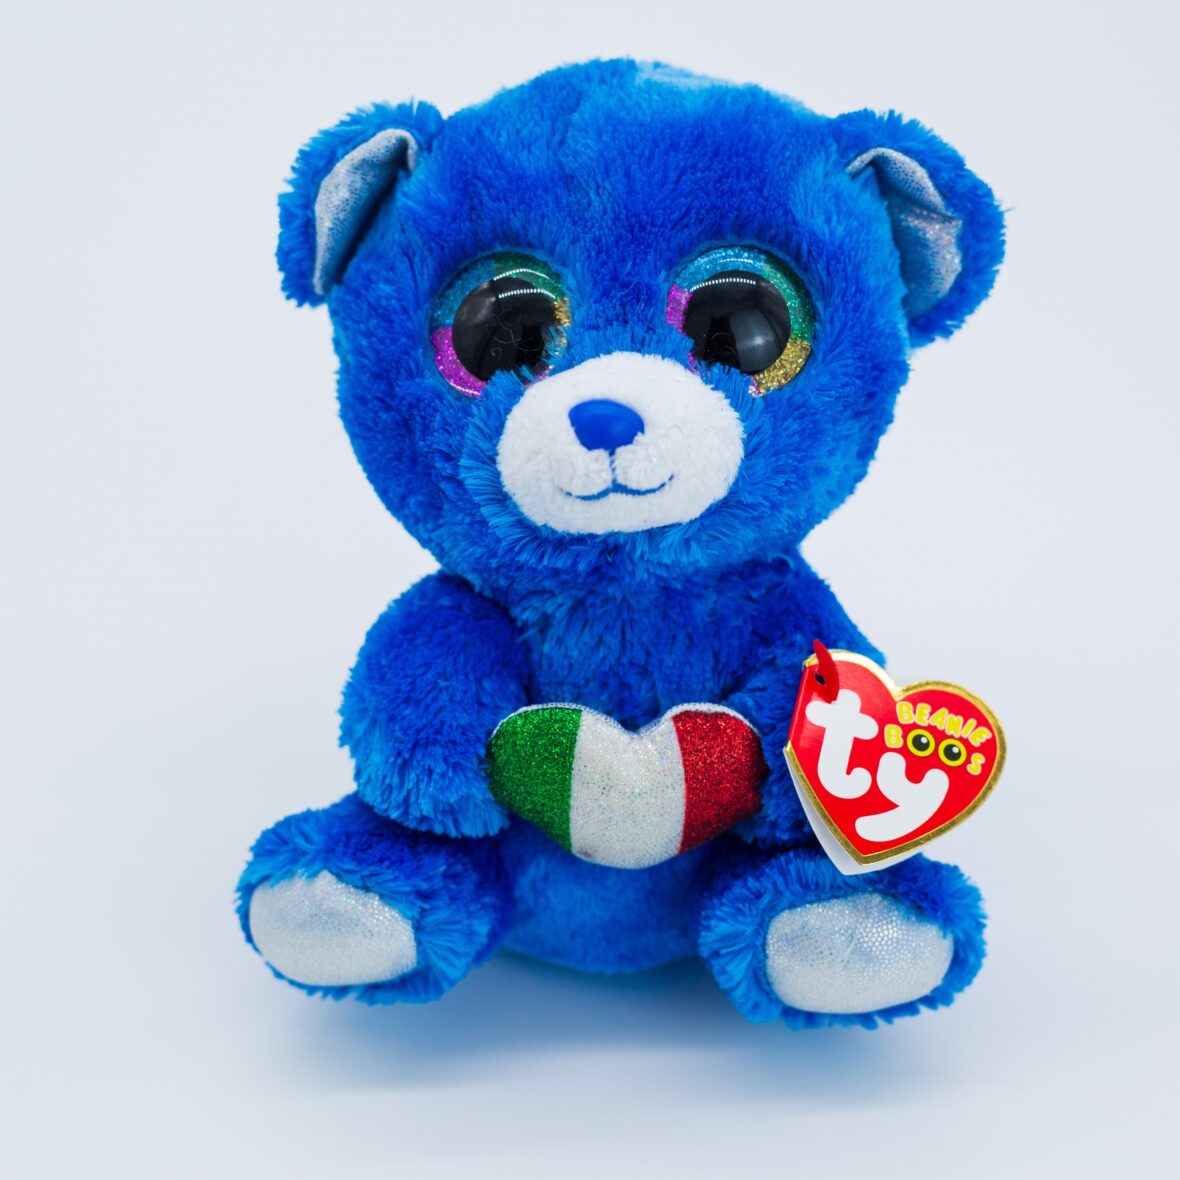 Big Eyes Teddy Bear Soft Stuffed Plush Toy – 15cm